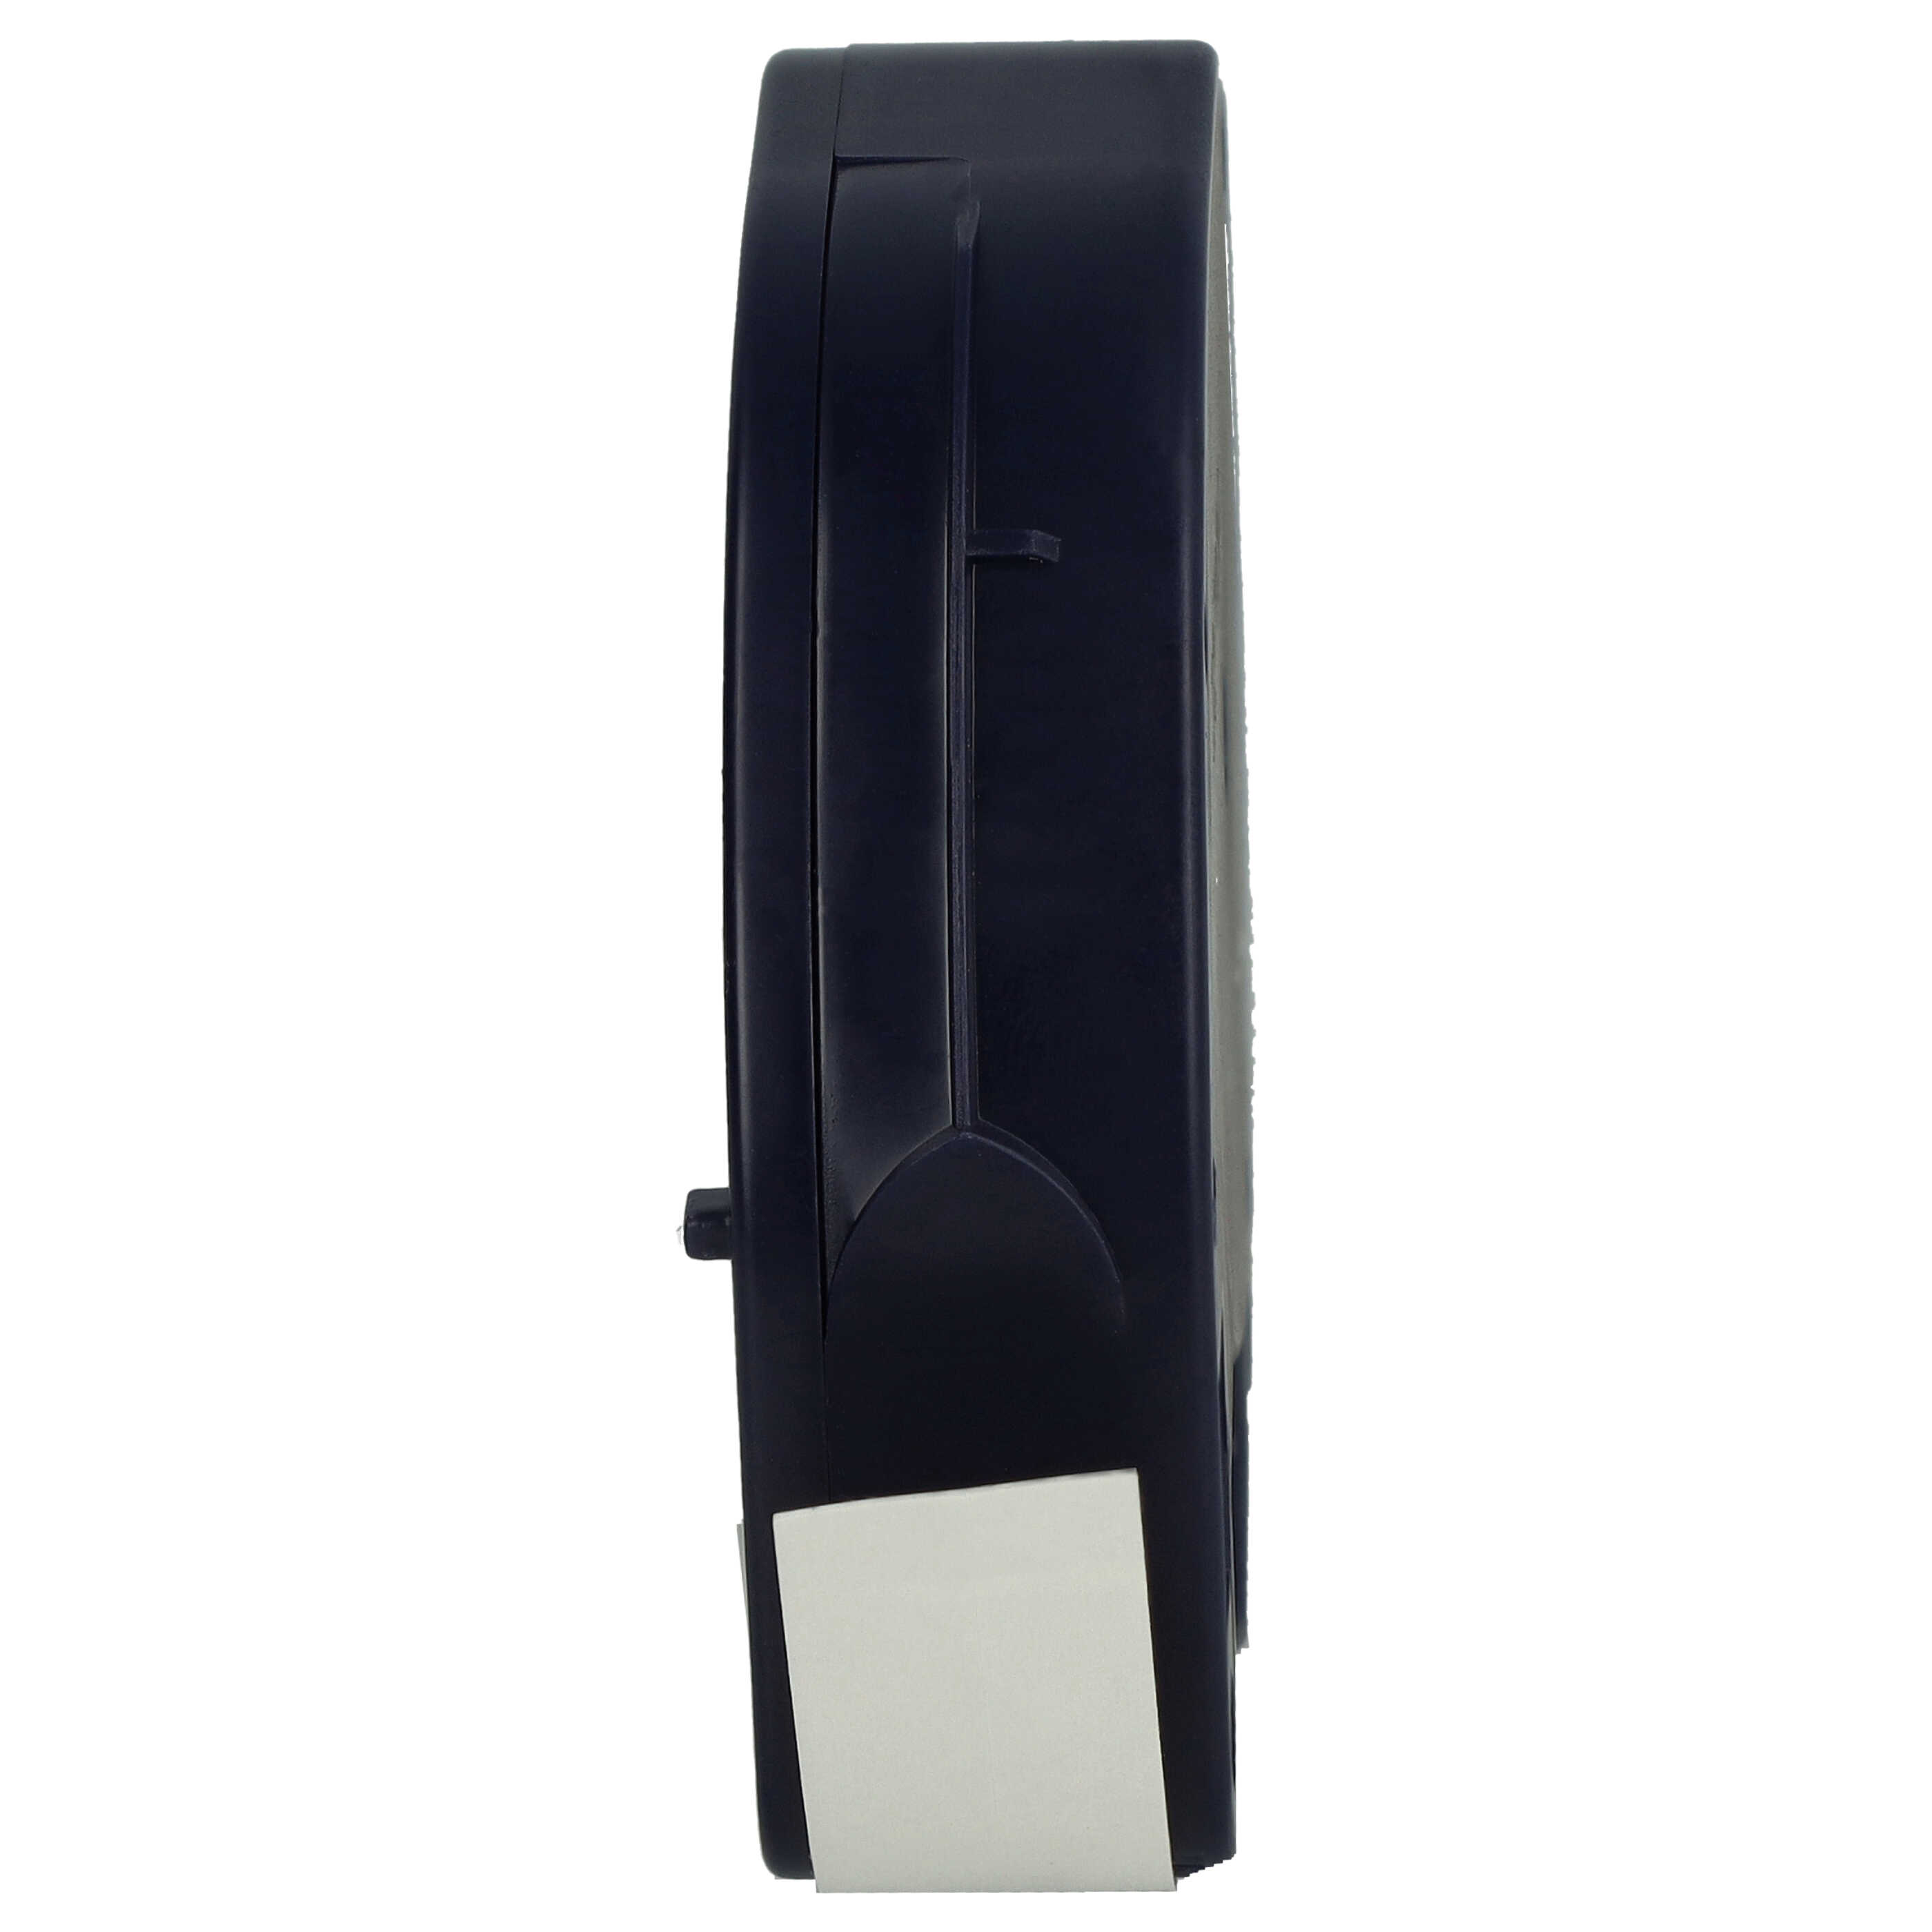 Casete cinta escritura plástico reemplaza Dymo S0721660, 91221 Negro su Blanco